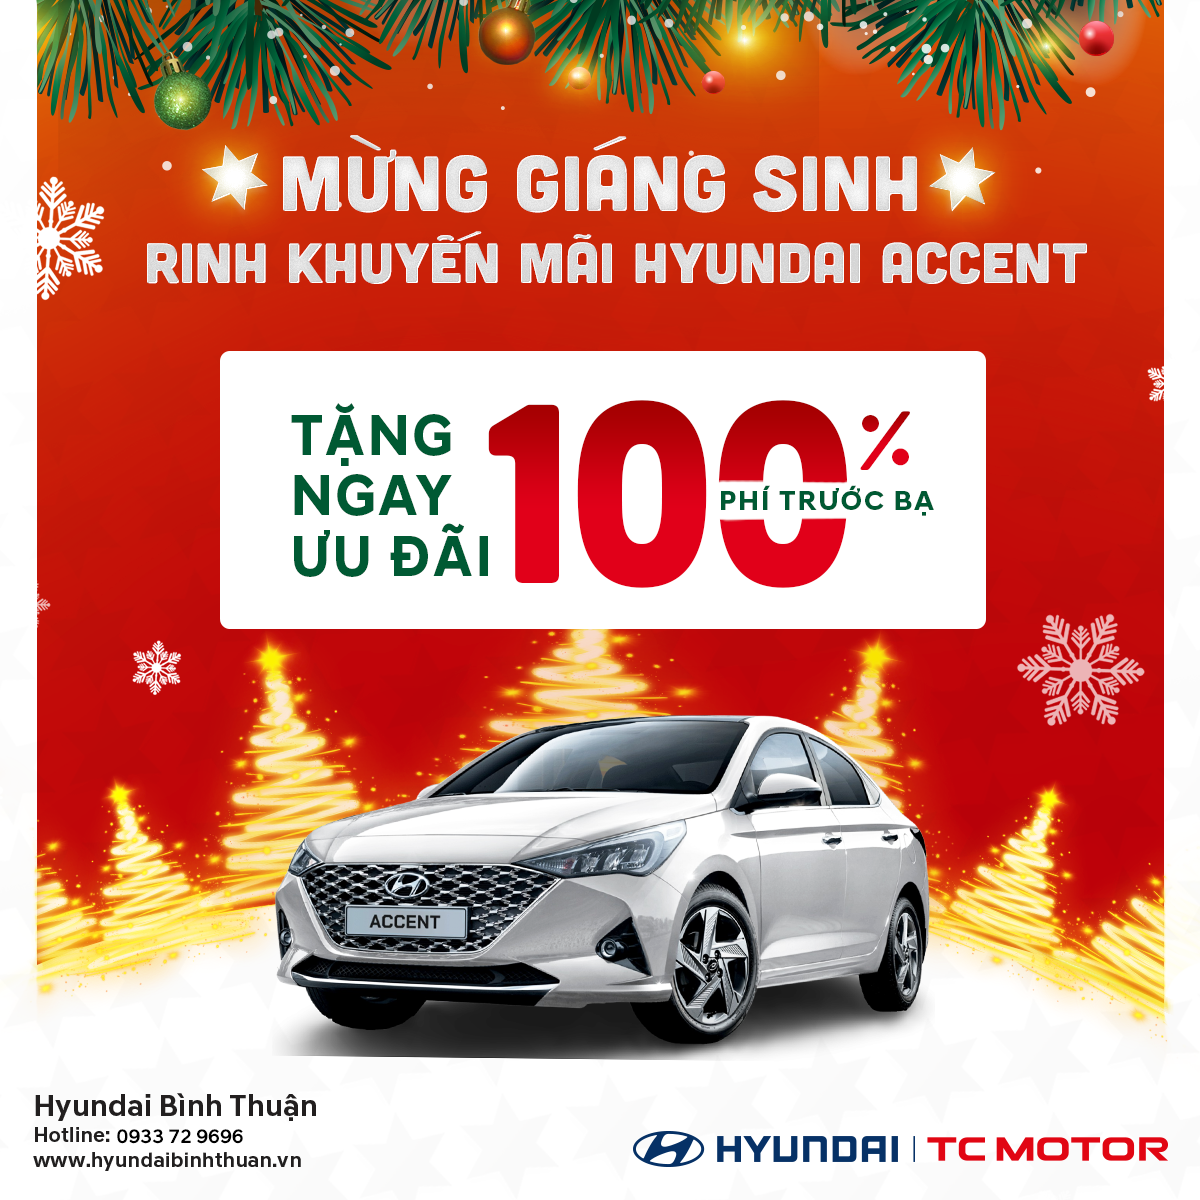 Accent Hyundai Khuyến Mãi 100% Phí Trước Bạ